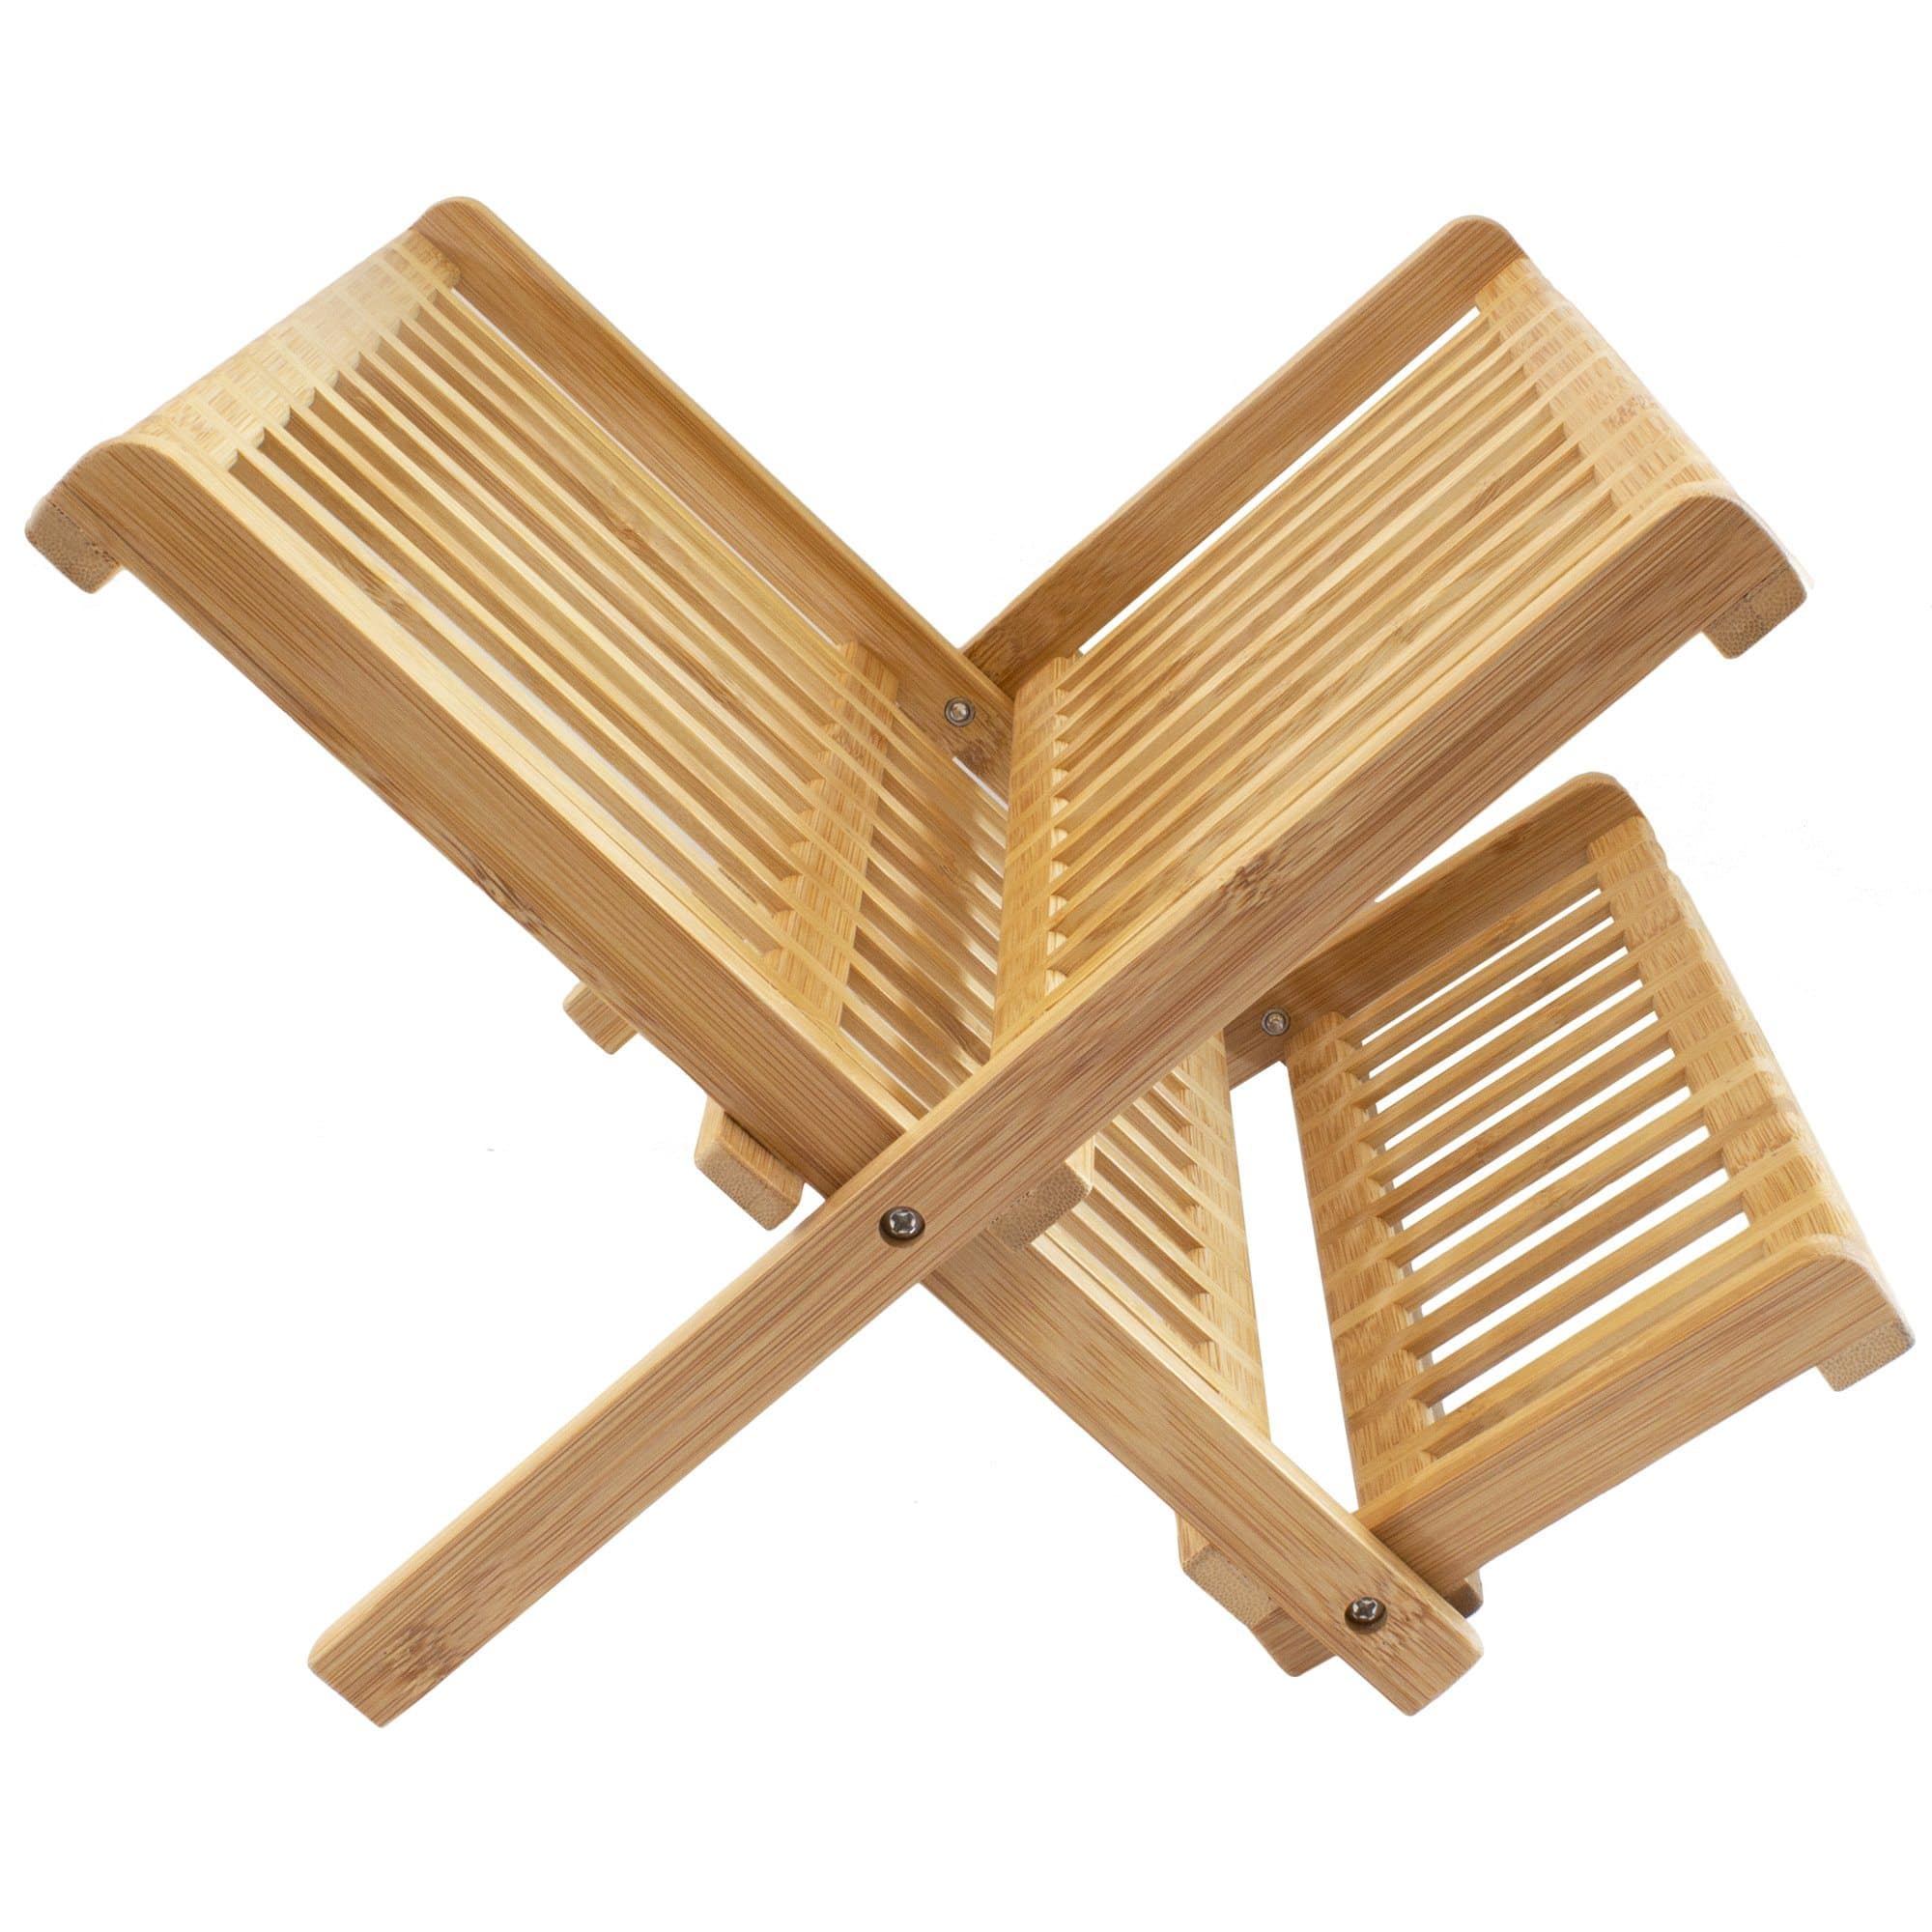 Dish Rack Utensil Holder – Totally Bamboo